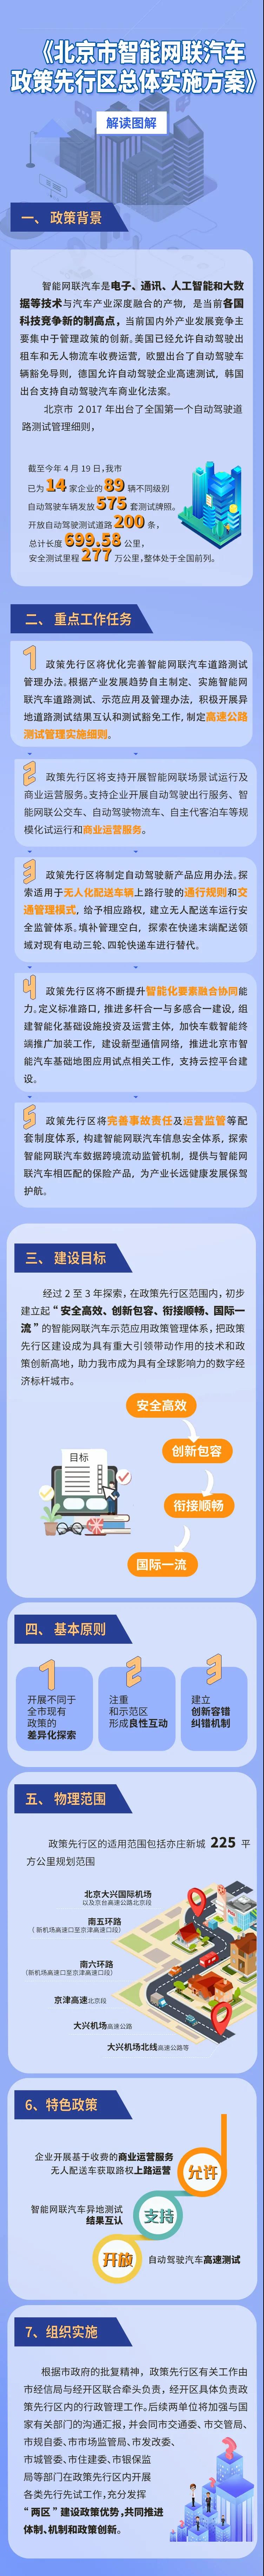 一图读懂北京市智能网联汽车政策先行区总体实施方案.jpg